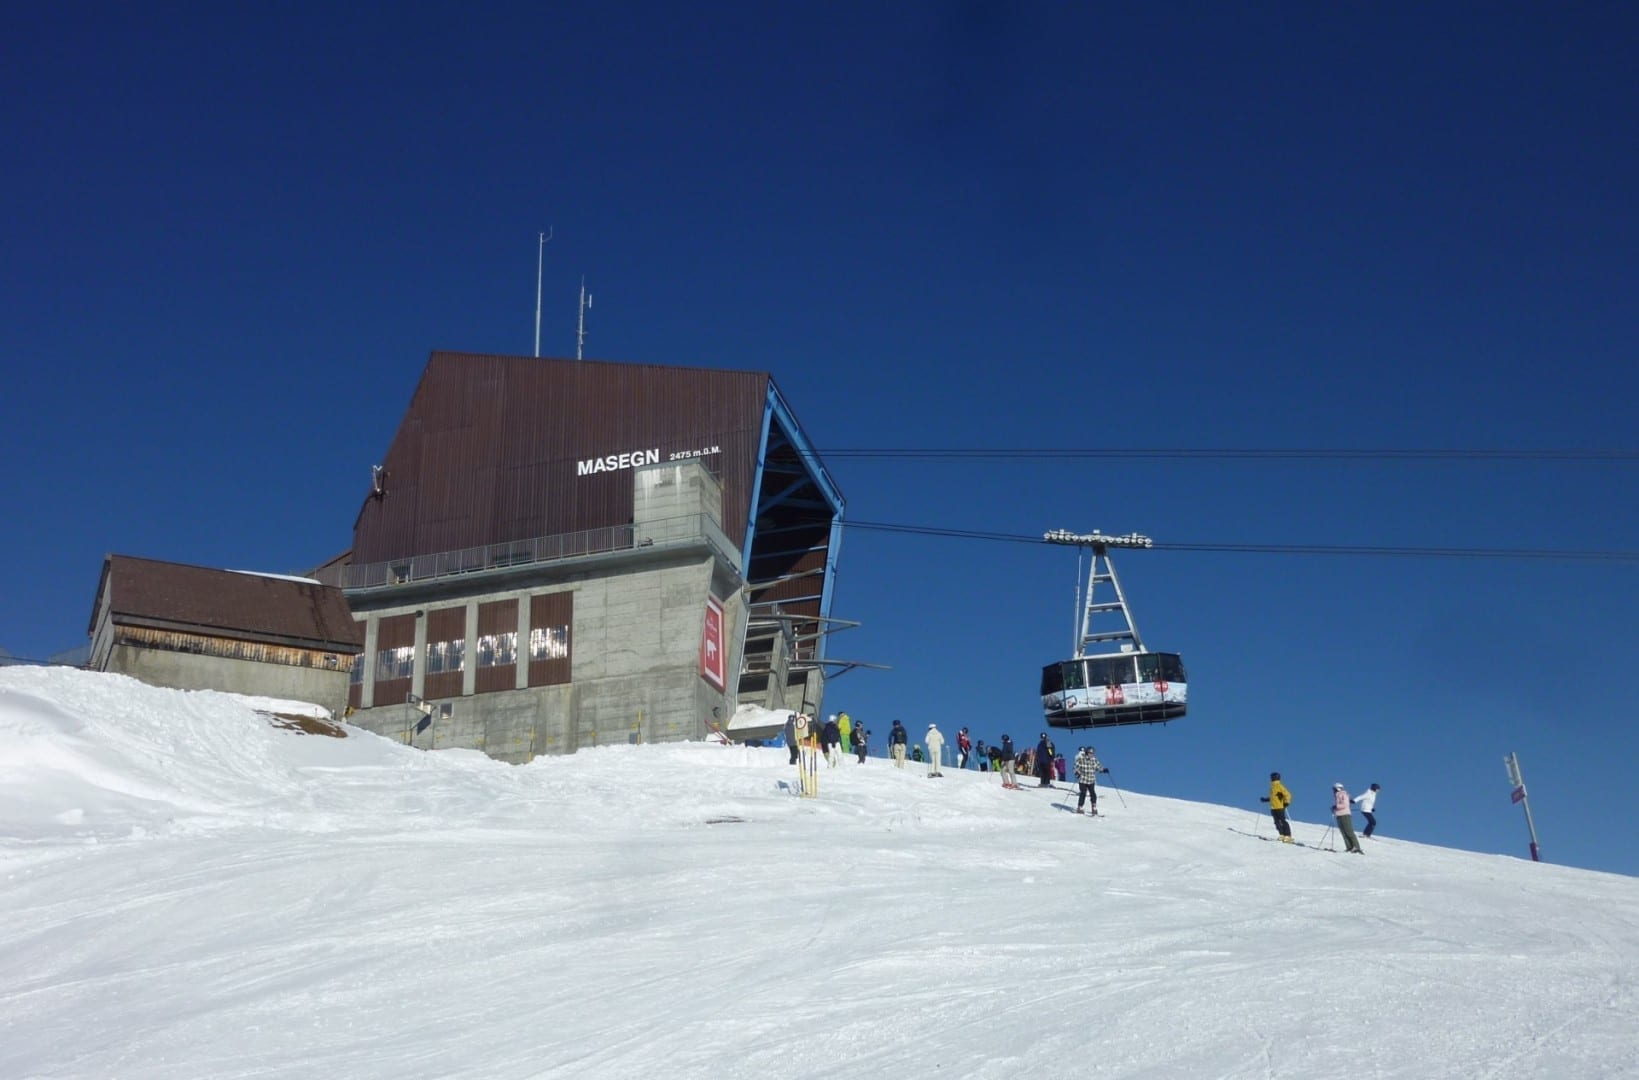 Mierda, la estación de teleférico de Masegn y los esquiadores Laax Suiza